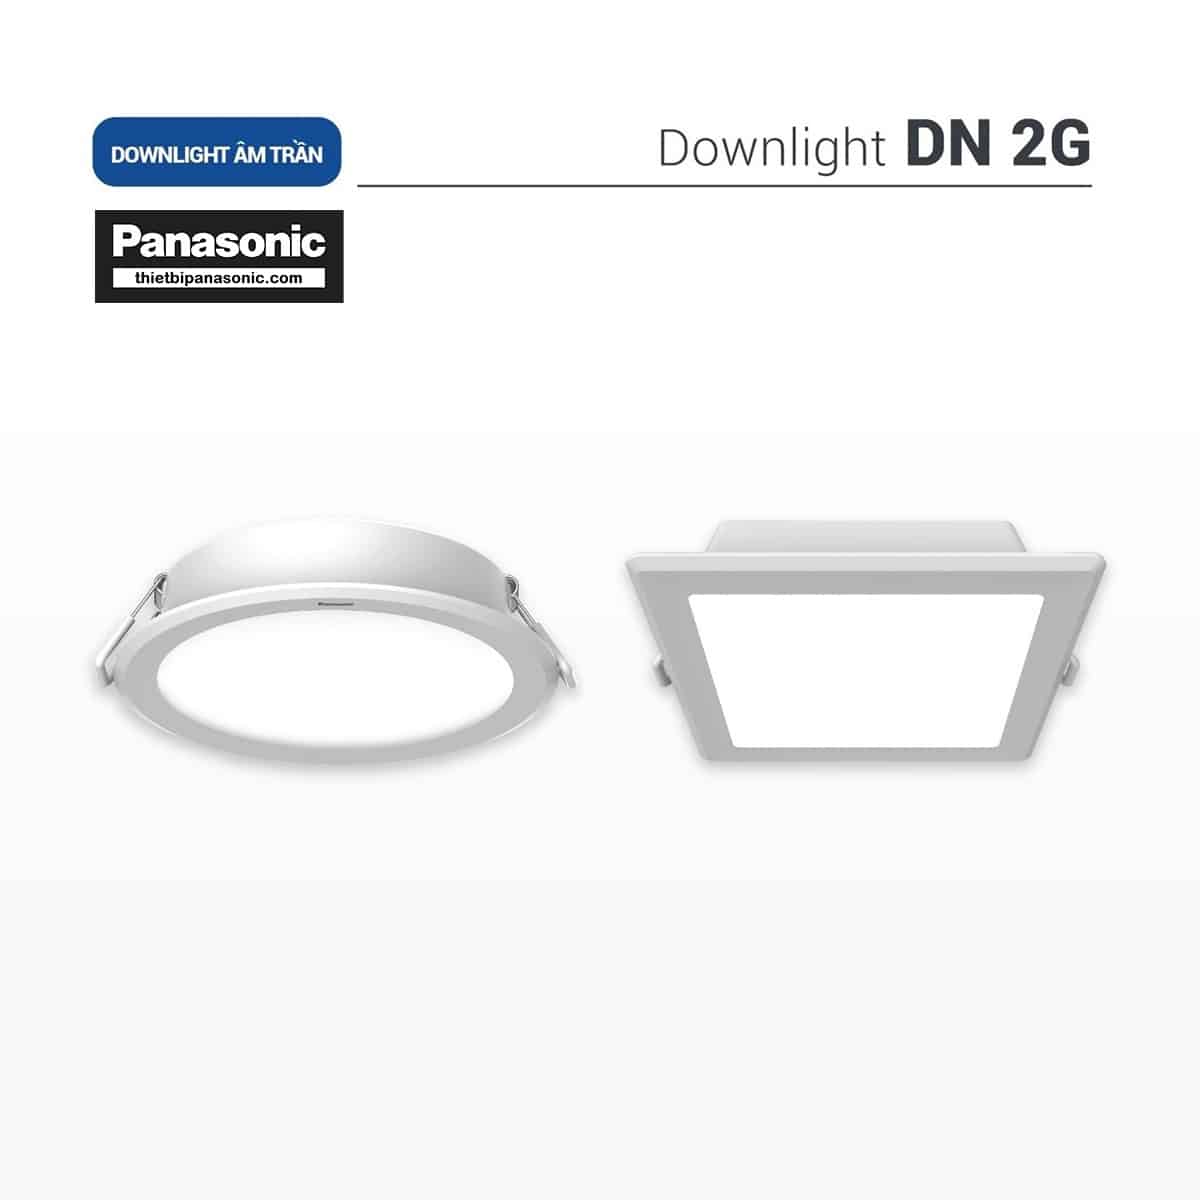 Đèn âm trần DN 2G Panasonic 18W đơn sắc tròn | lỗ khoét Ø150mm, Ø175mm